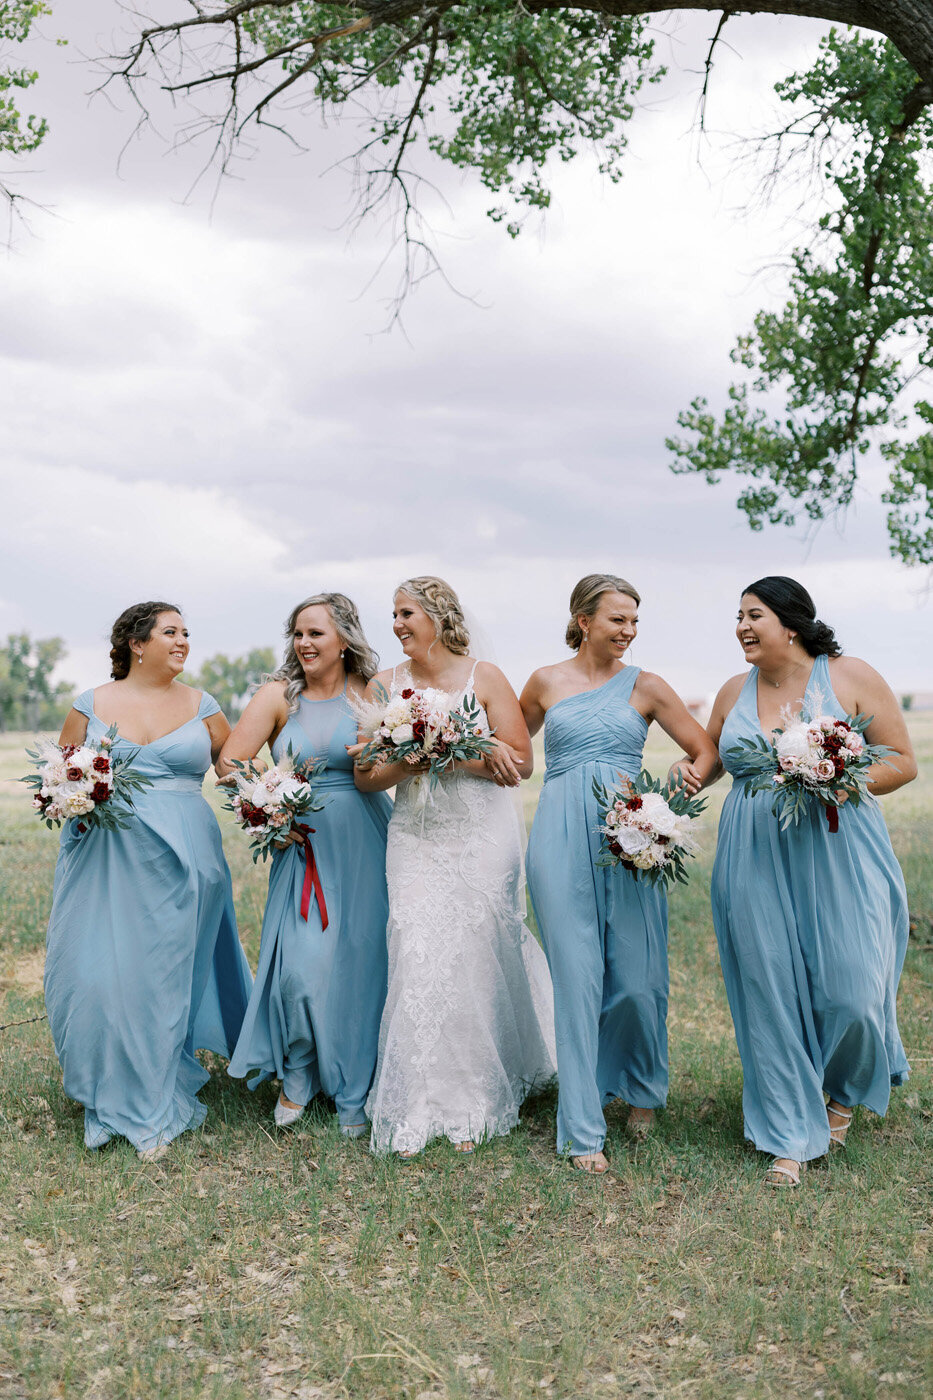 Oklahoma Colorado Wedding Photographer - Morgan Asaad39